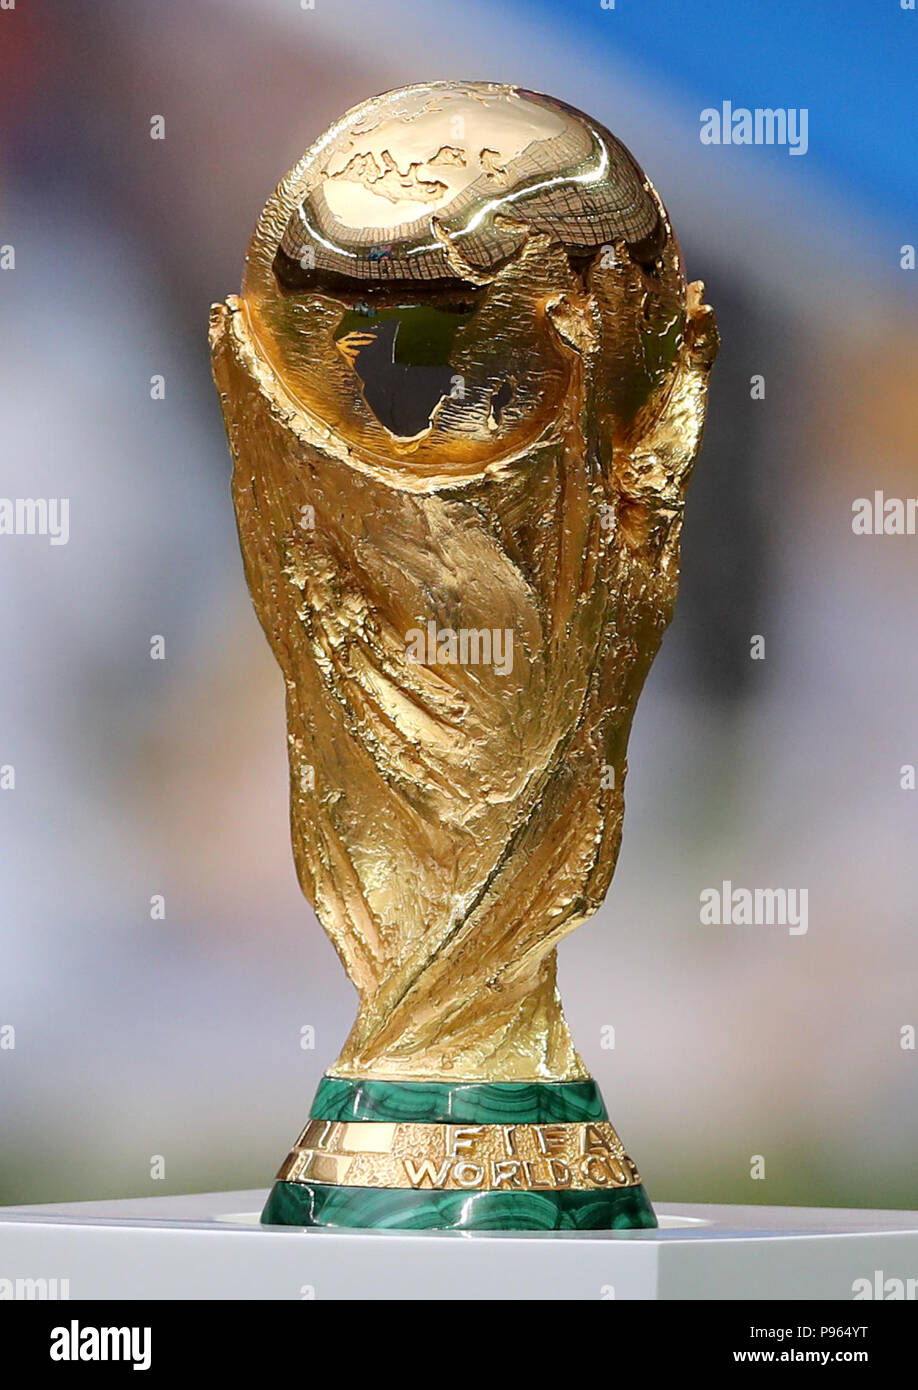 Fifa world cup trophy immagini e fotografie stock ad alta risoluzione -  Alamy